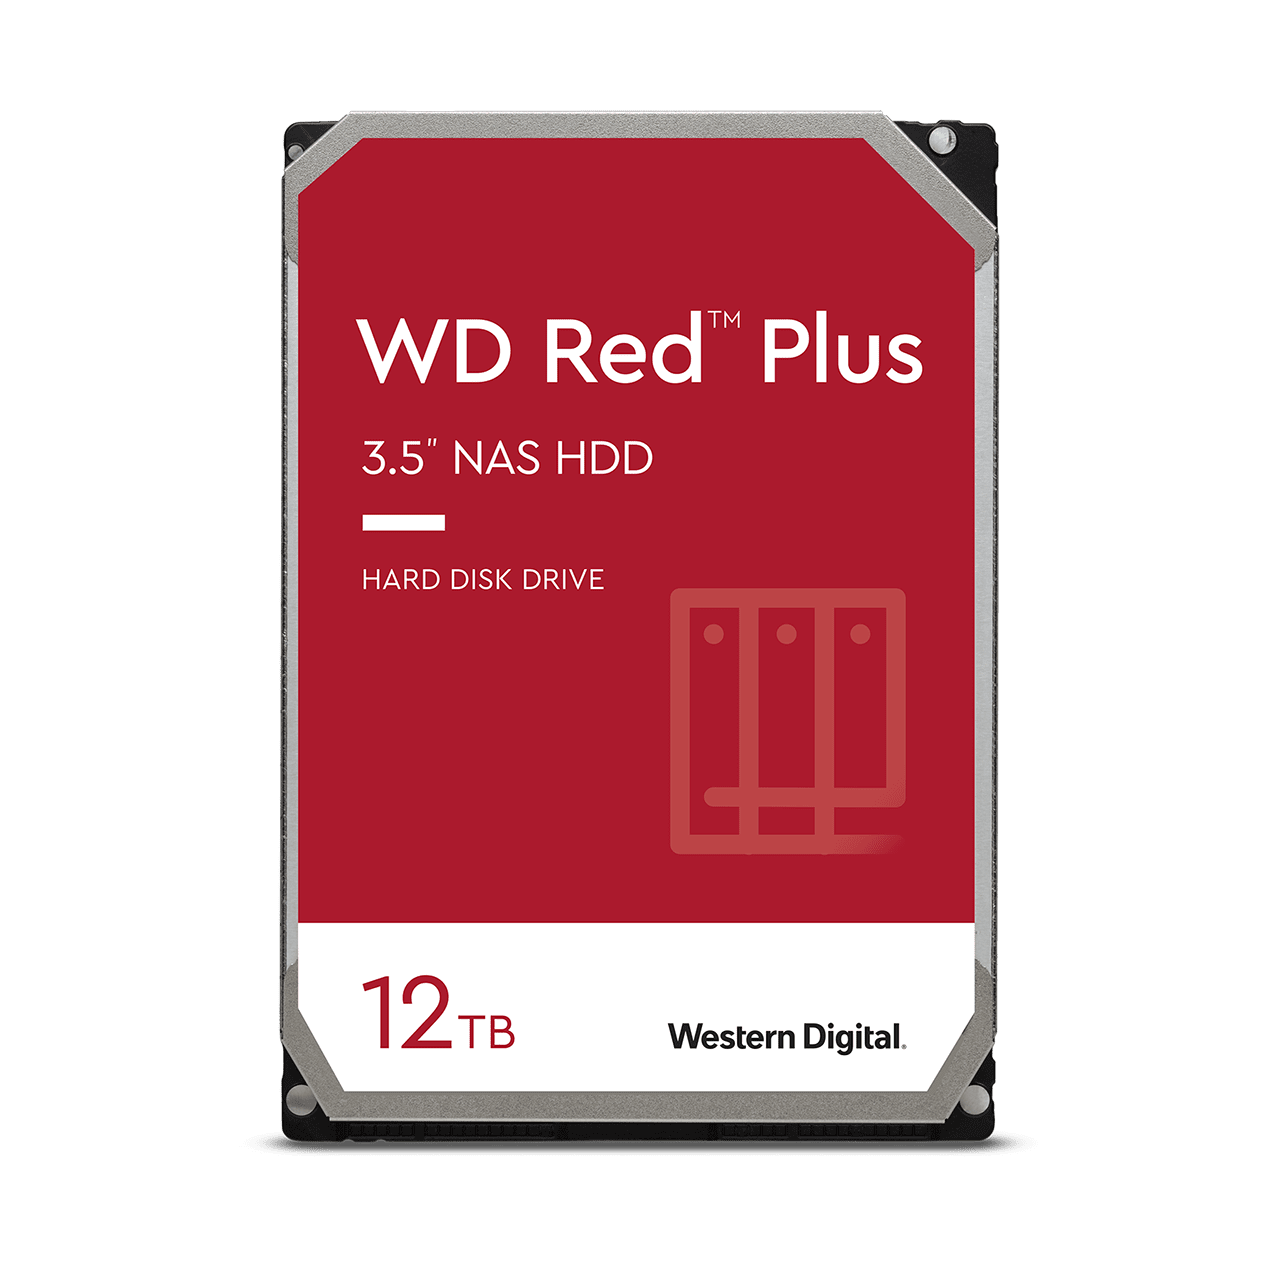 wd-red-plus-sata-3-5-hdd-12tb.thumb.1280.1280